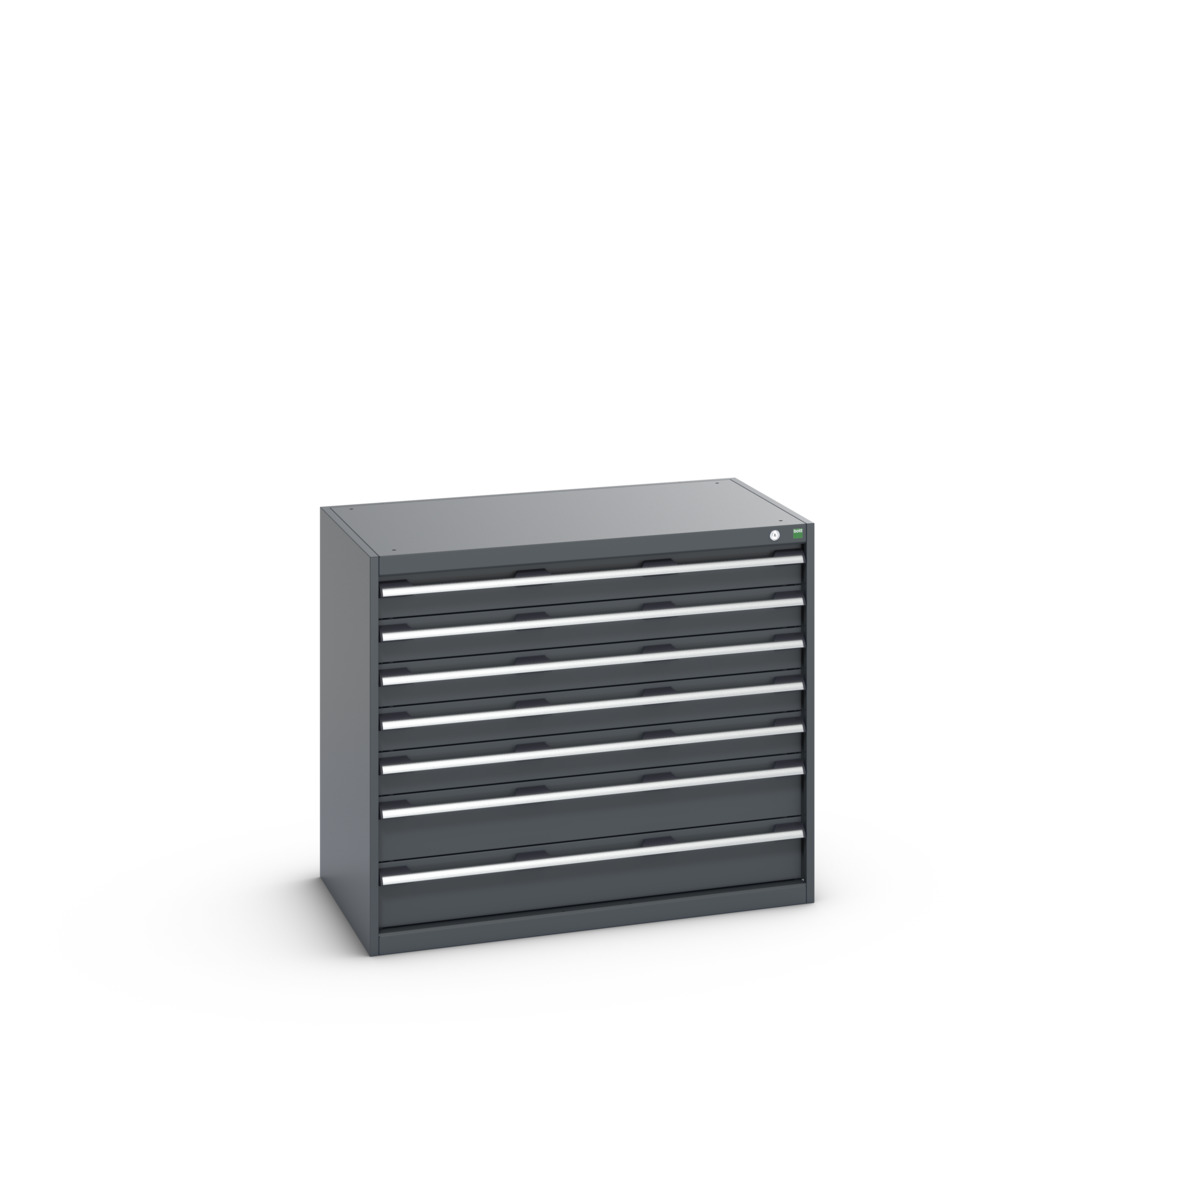 40021022.77V - cubio drawer cabinet